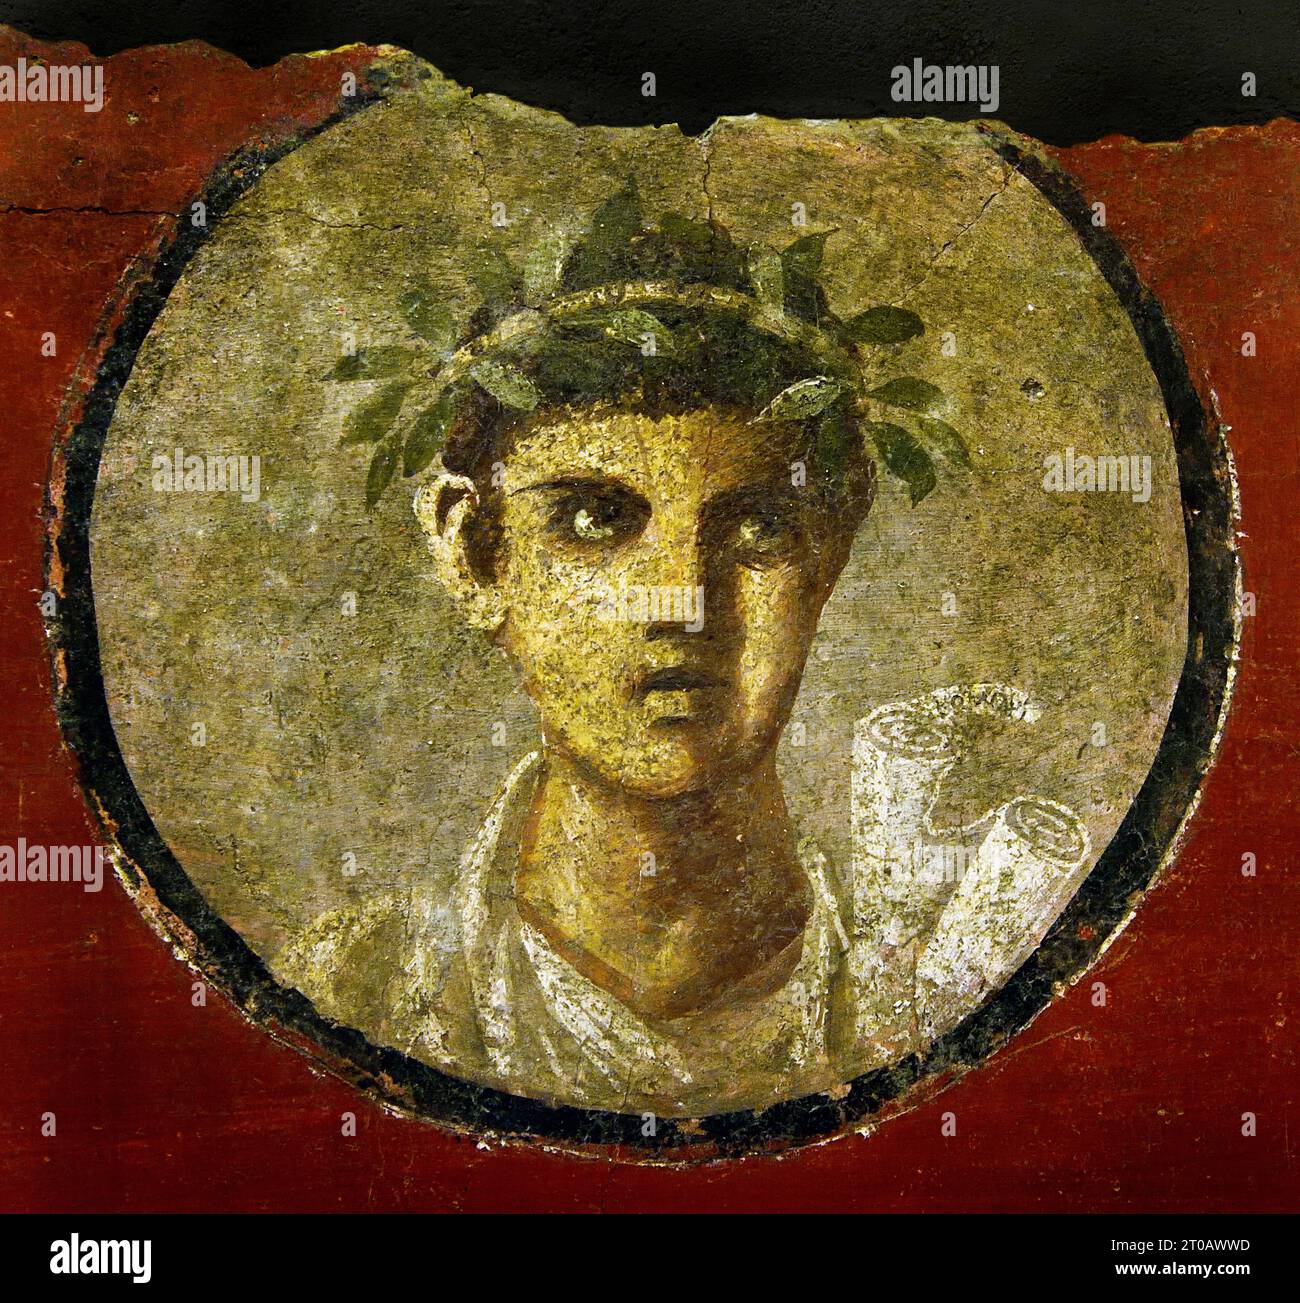 "Young Man with a Roll, 50-79 fresco Pompei Roman City si trova vicino a Napoli, nella regione Campania. Pompei fu sepolta sotto 4-6 m di cenere vulcanica e pomice nell'eruzione del Vesuvio nel 79 d.C. Italia Foto Stock